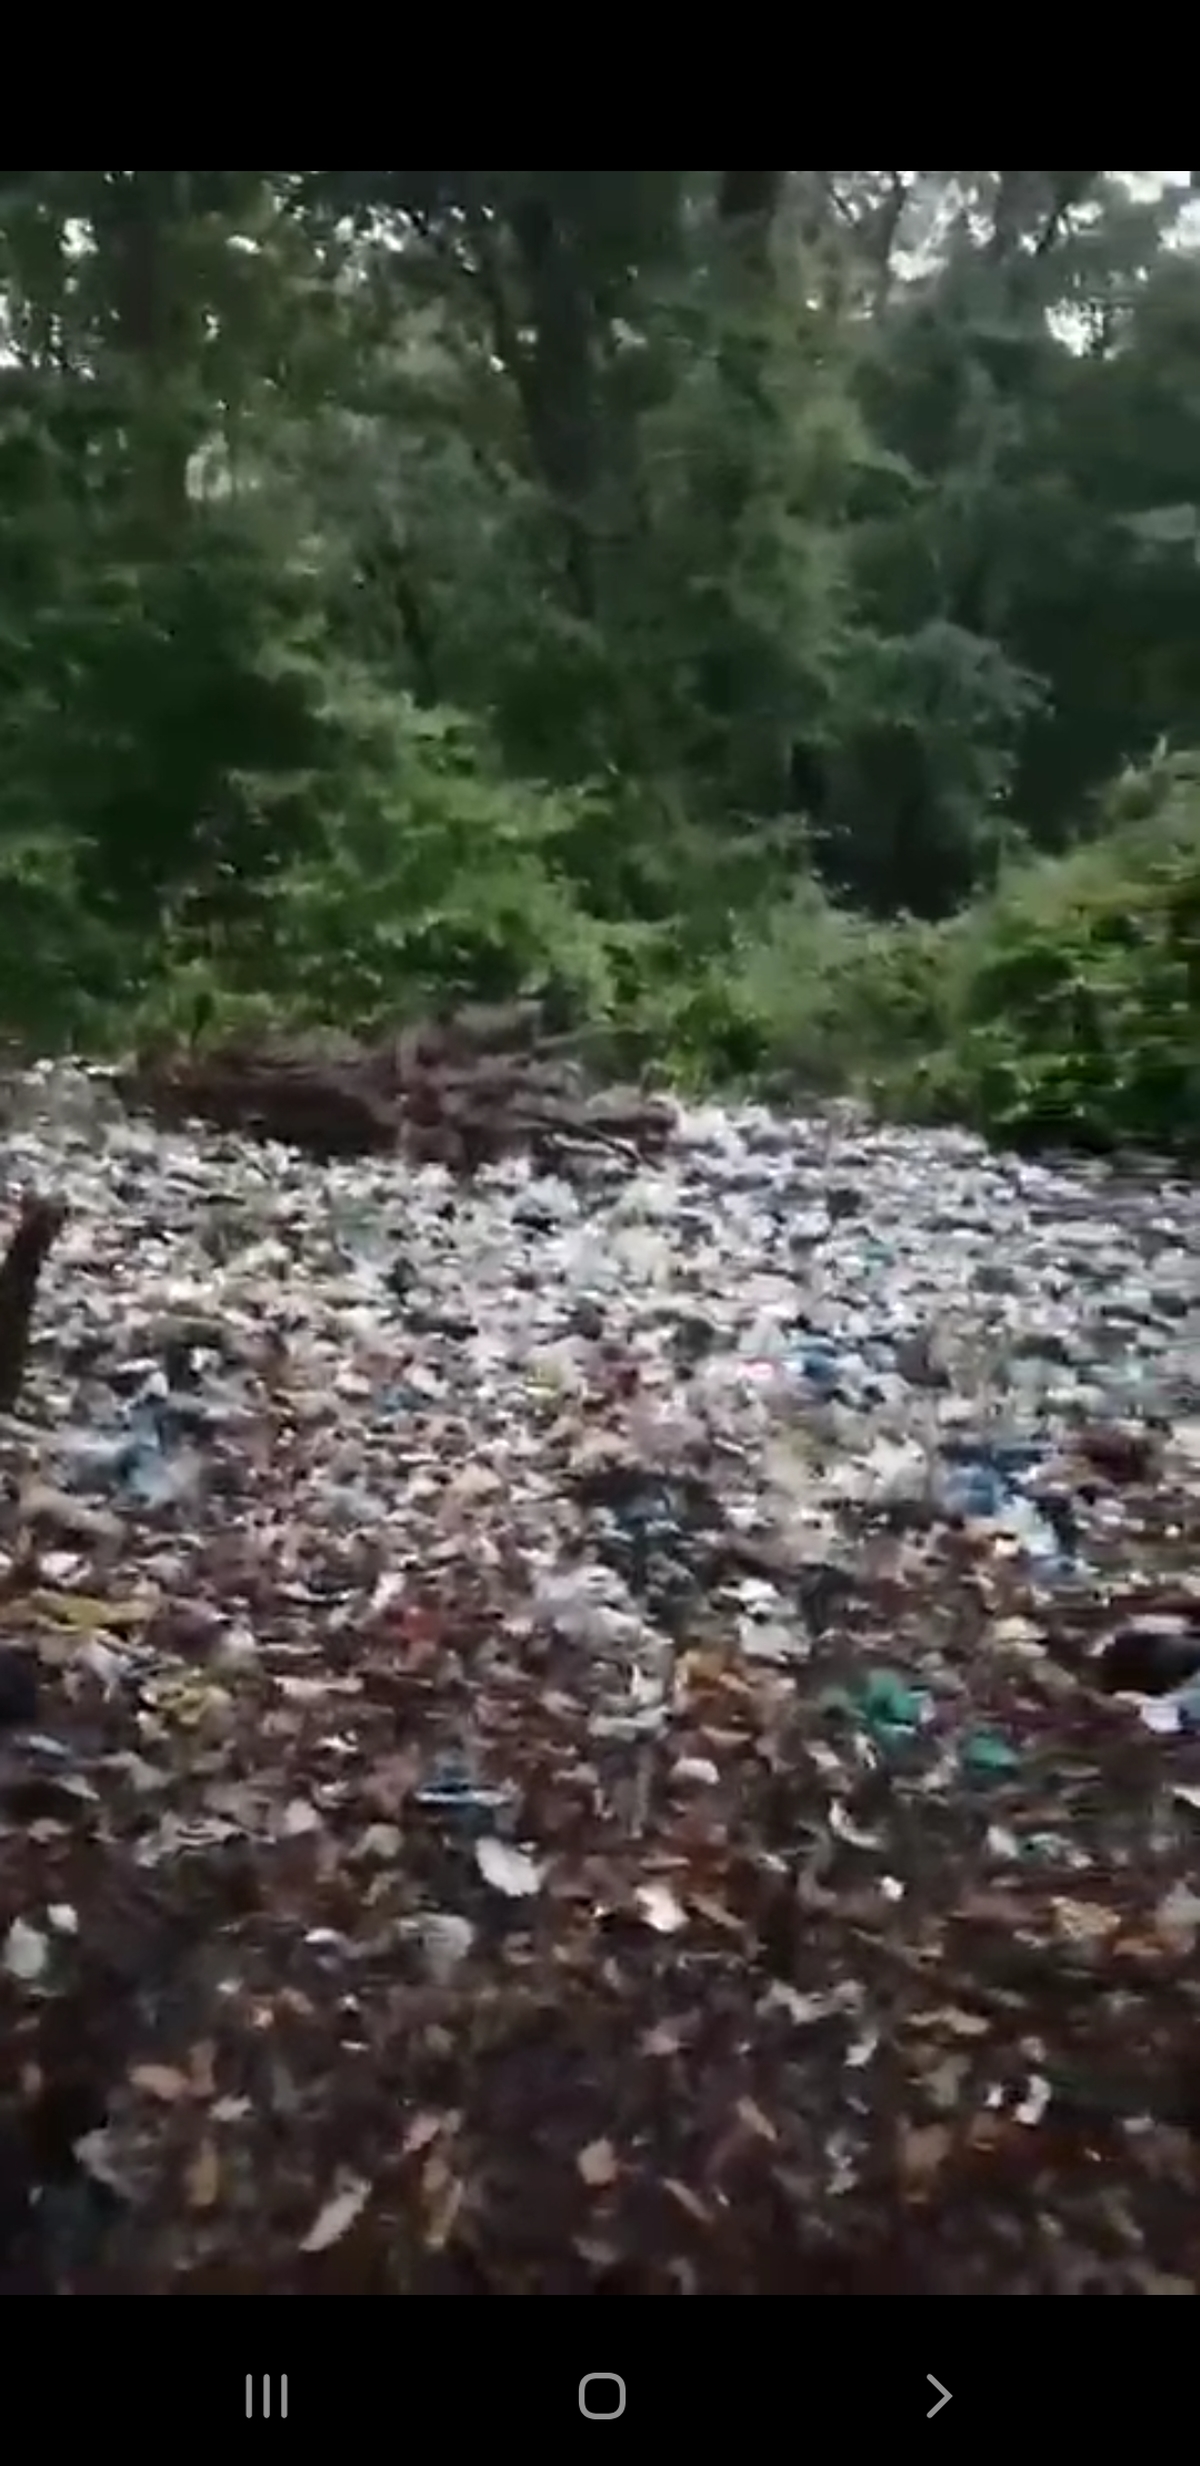 وضعیت زباله در جنگل زرین آباد، مازندران + فیلم